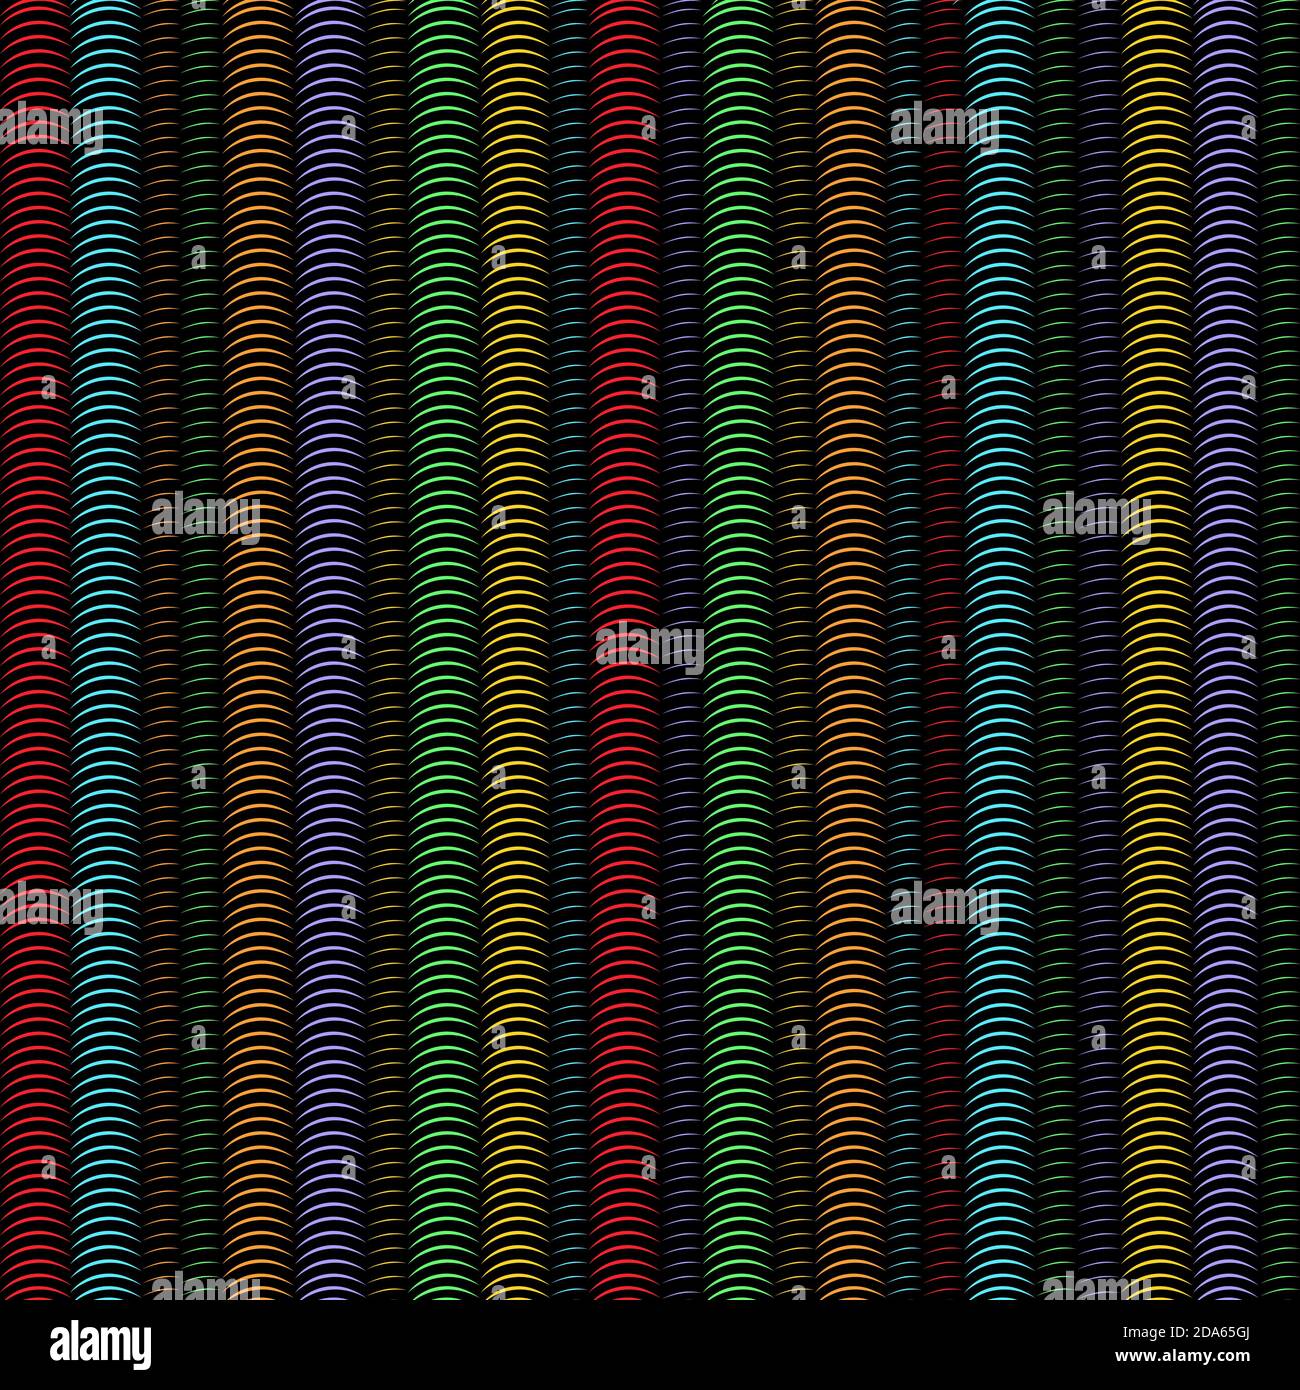 Mehrfarbige vertikale Spiralstreifen Rohre, abstrakte nahtlose Muster, geometrische Ornament, grunge Regenbogen optische Illusion. Farbenfroh und hell Stock Vektor